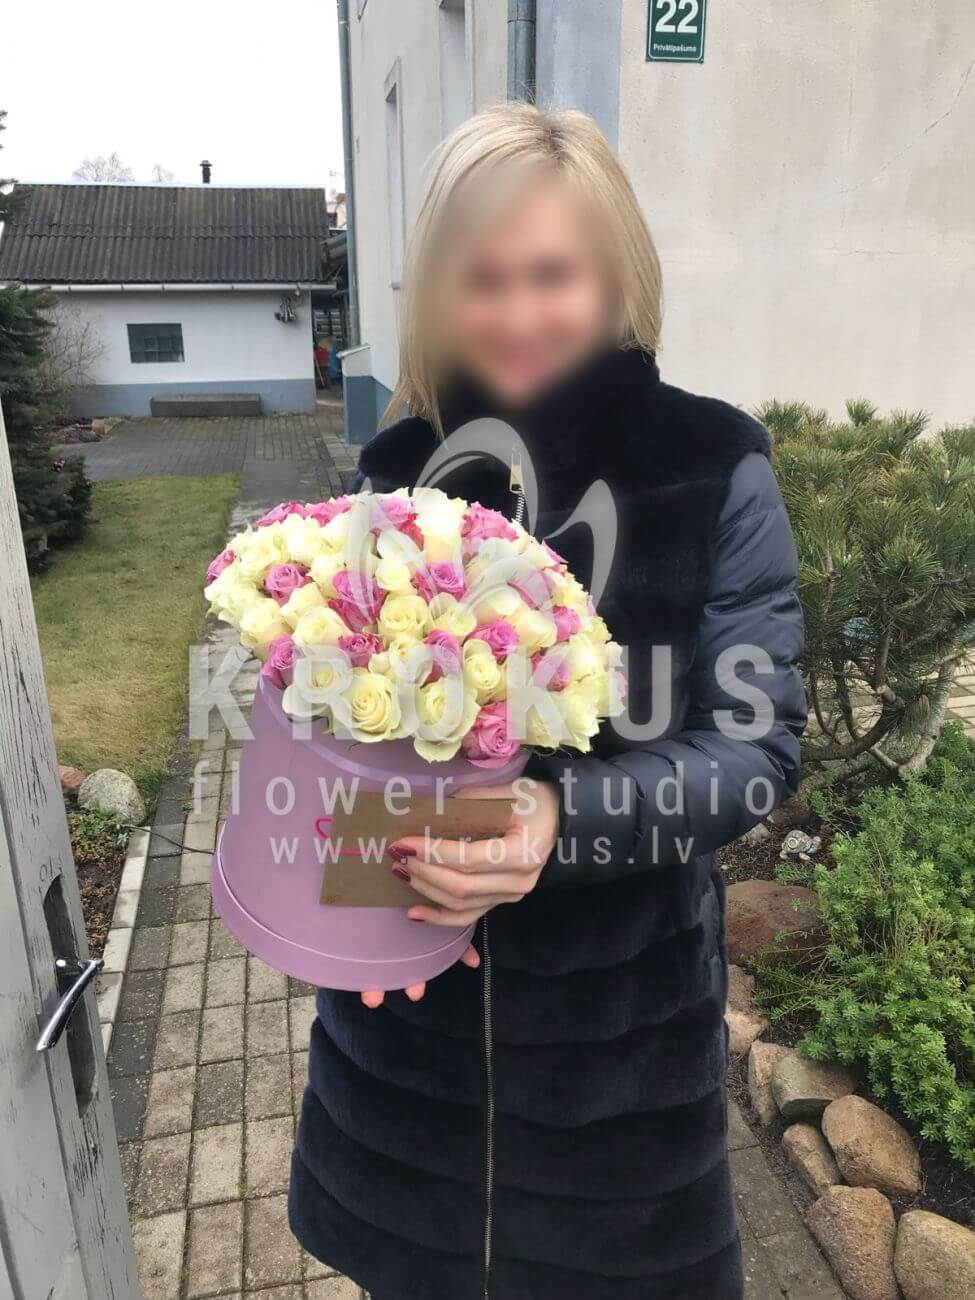 Доставка цветов в город Latvia (коробкабелые розы)